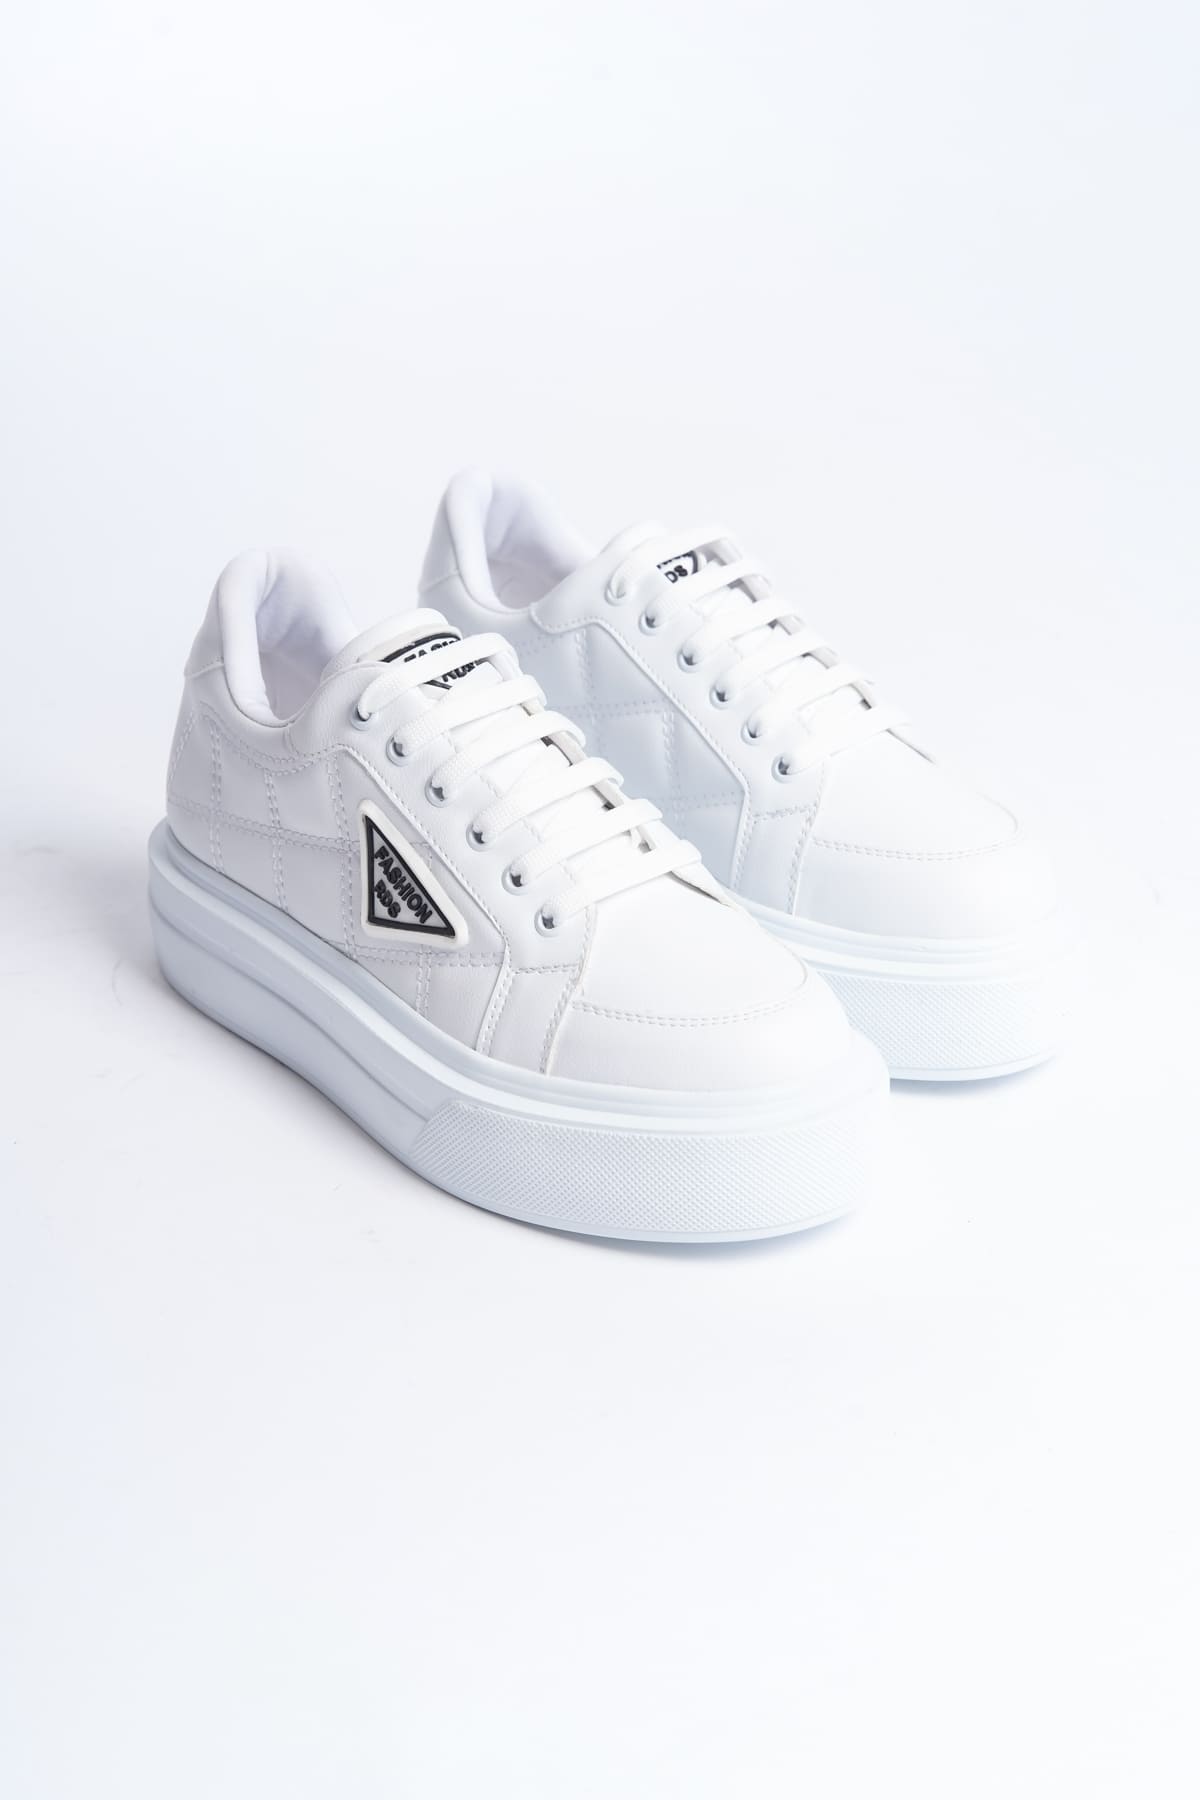 Lisinya948  Bağcıklı Ortopedik Taban Desenli Kadın Sneaker Ayakkabı BT Beyaz